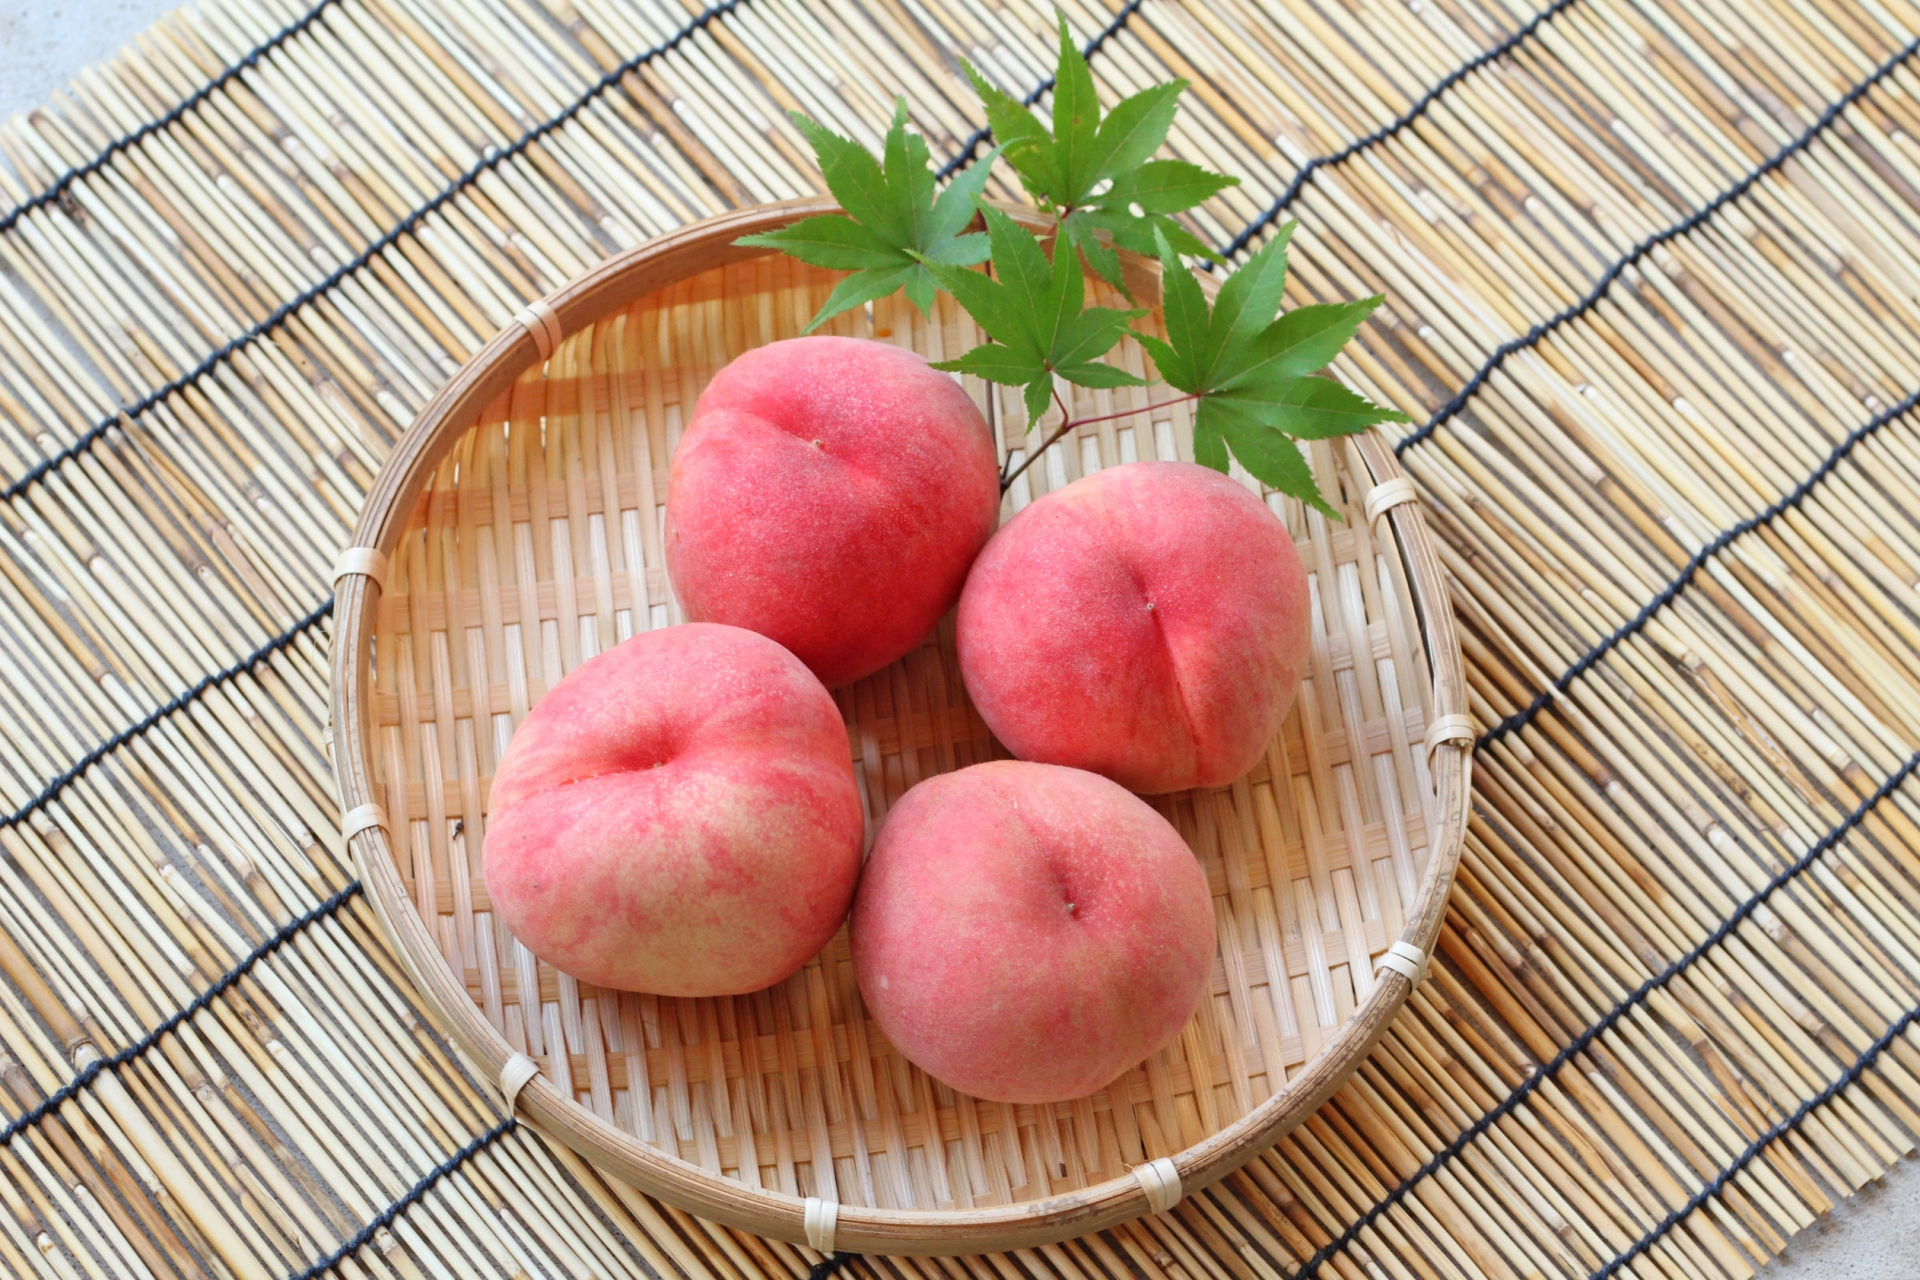 Enjoy the Fruit of Nagano